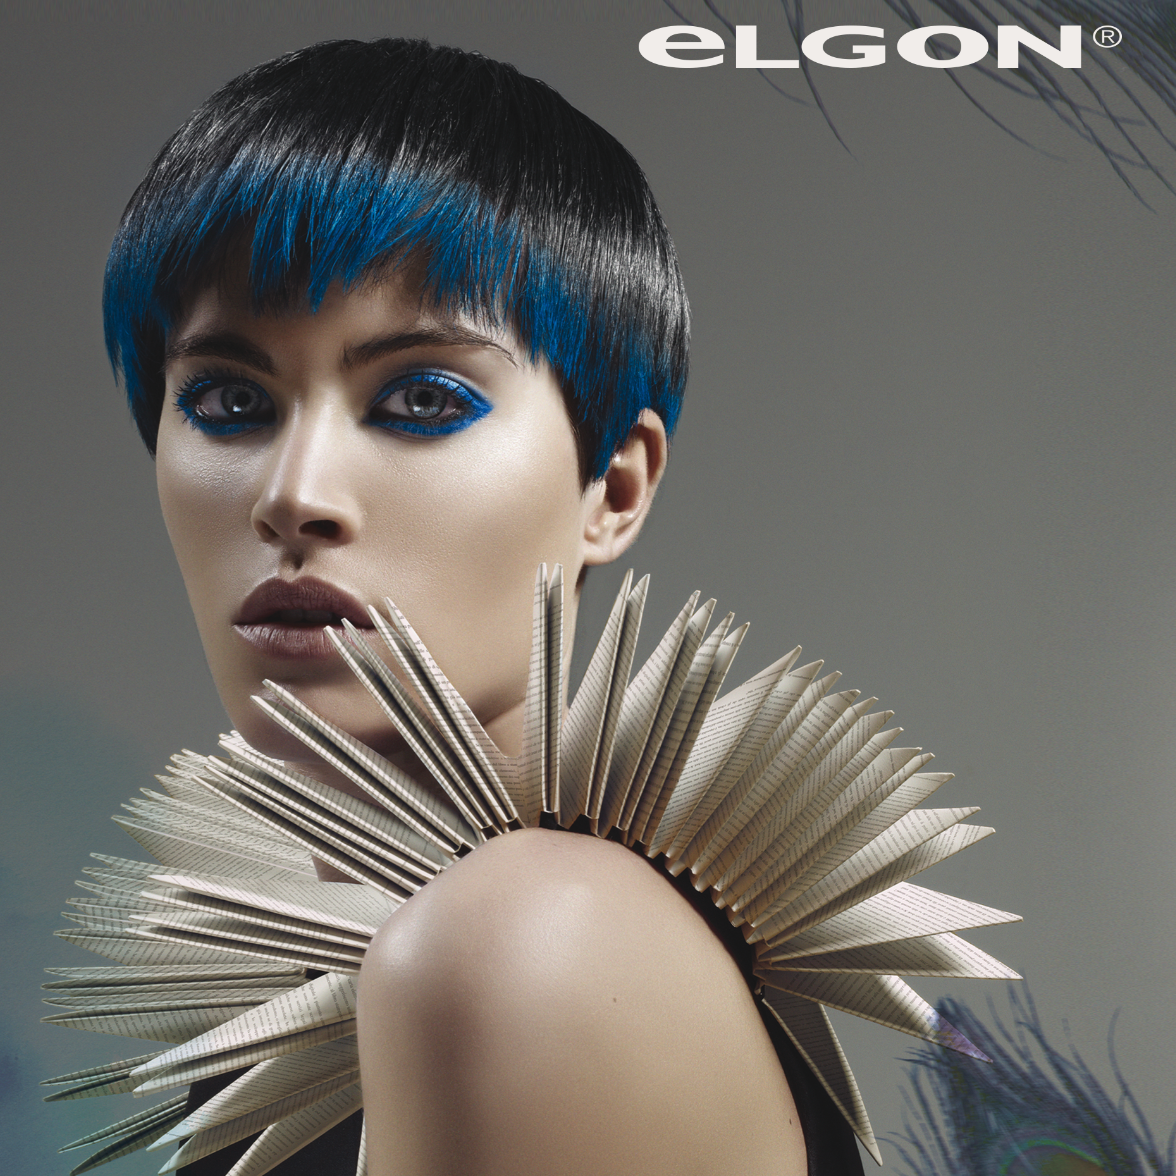 ELGON Hair care